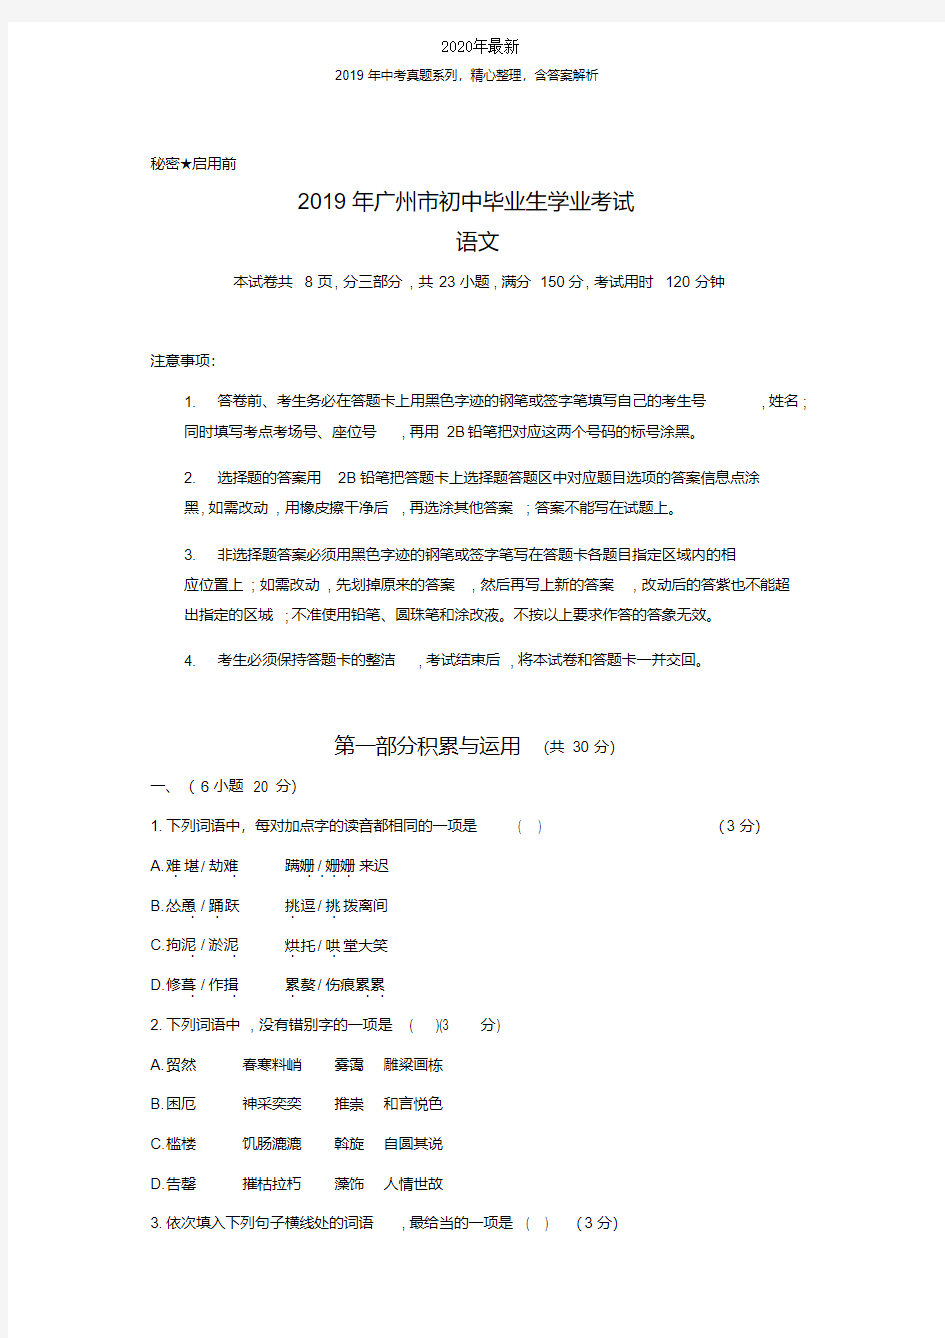 【2020年中考真题系列】广东省广州市2020年中考语文真题试卷及答案